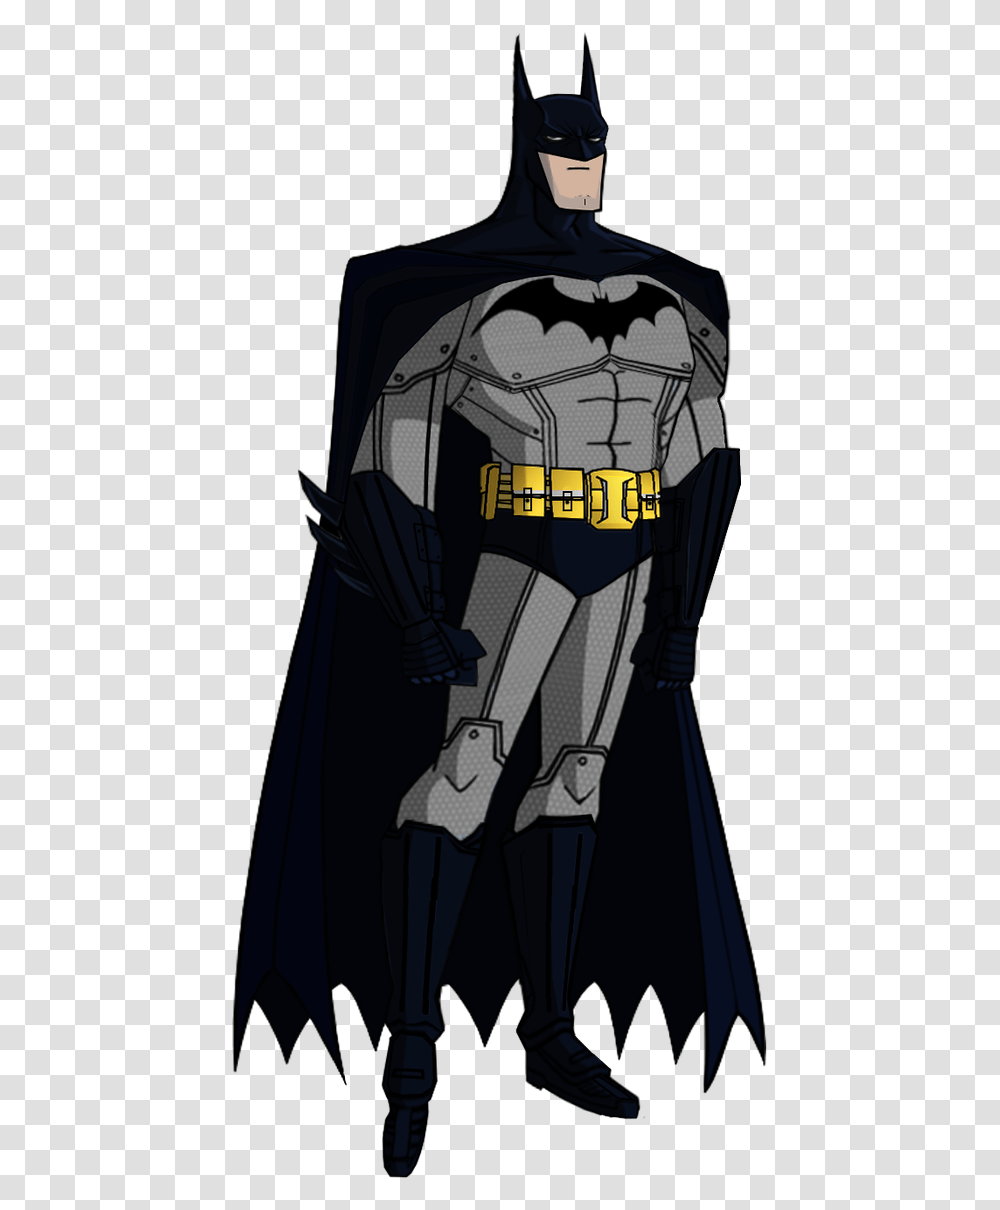 Batman Arkham Asylum File Batman Animated Series Batsuit, Person, Human Transparent Png